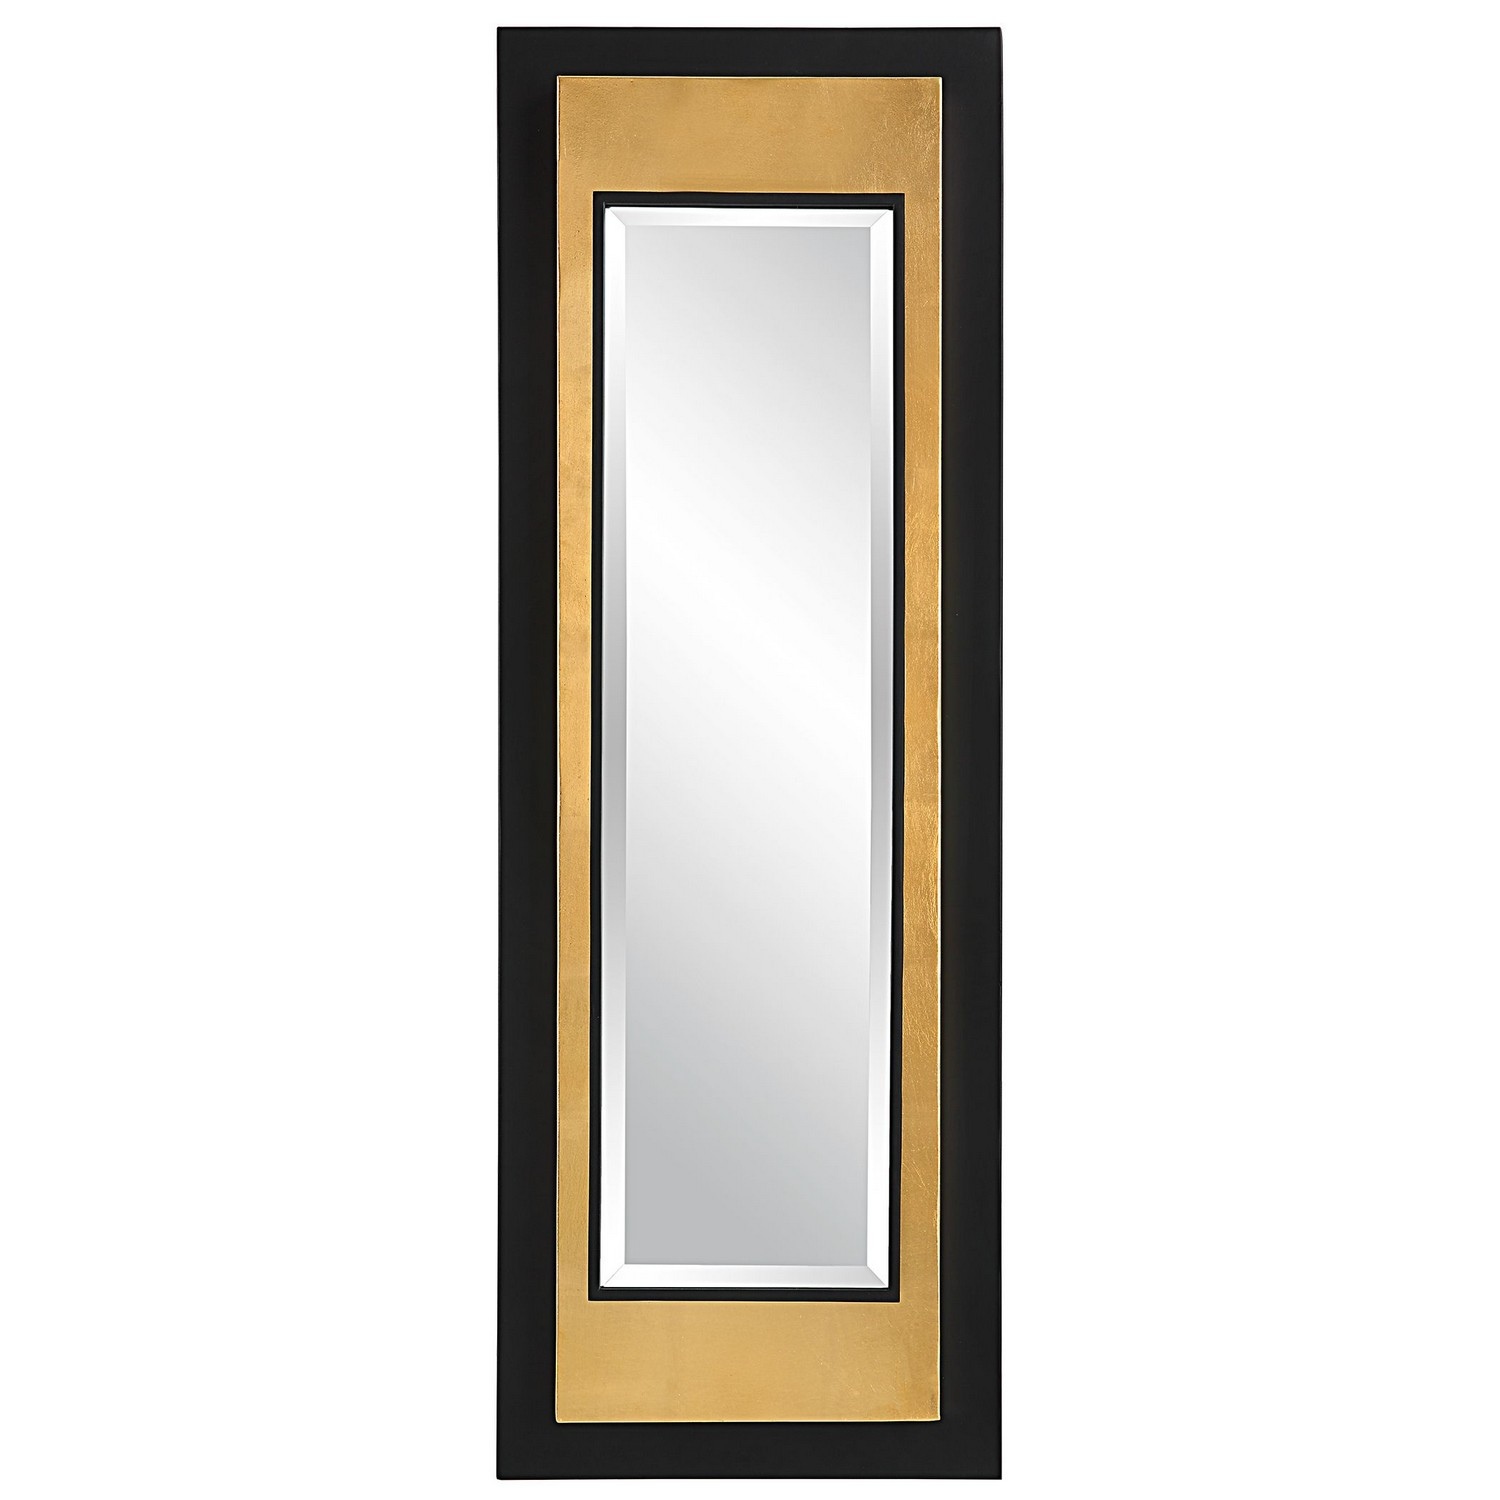 Uttermost Roston Mirror - Black/Gold